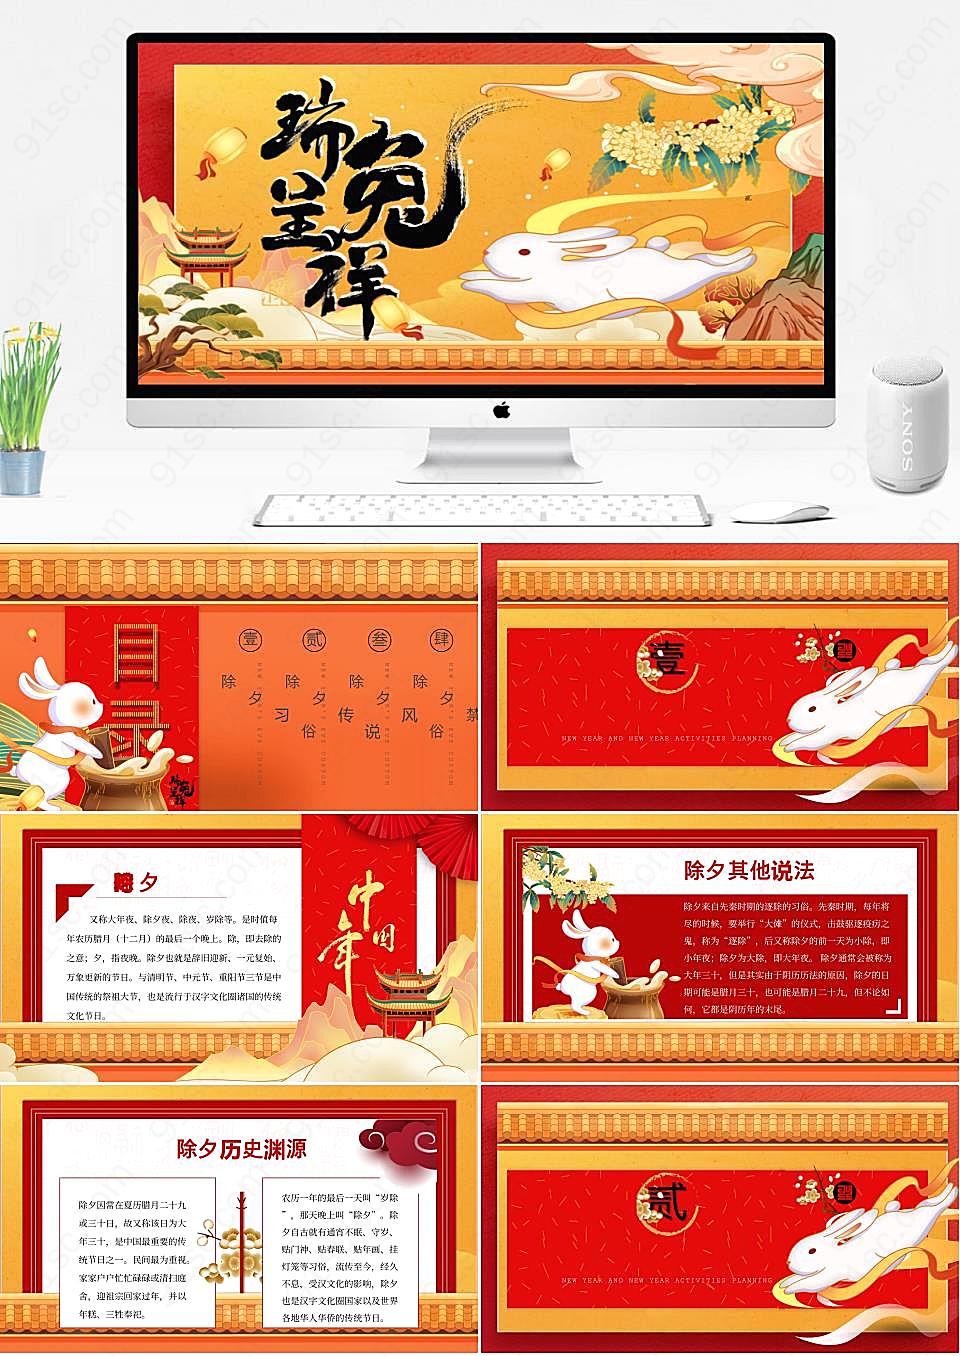 金色国潮兔年祥瑞传统除夕的韵味与现代风尚的结合节日庆典PPT模板下载